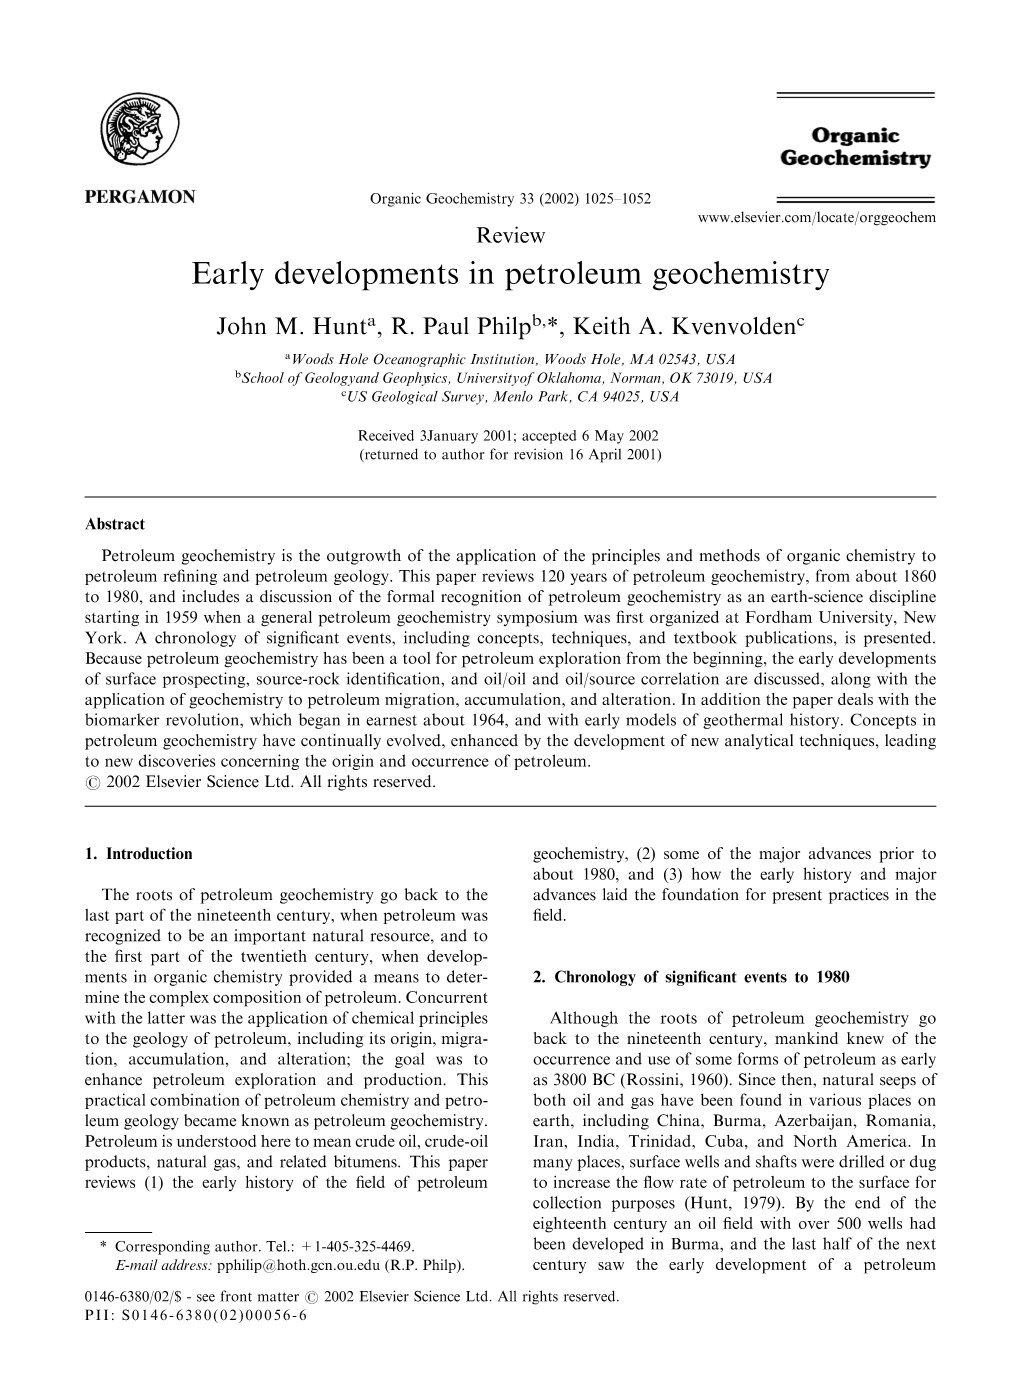 Early Developments in Petroleum Geochemistry